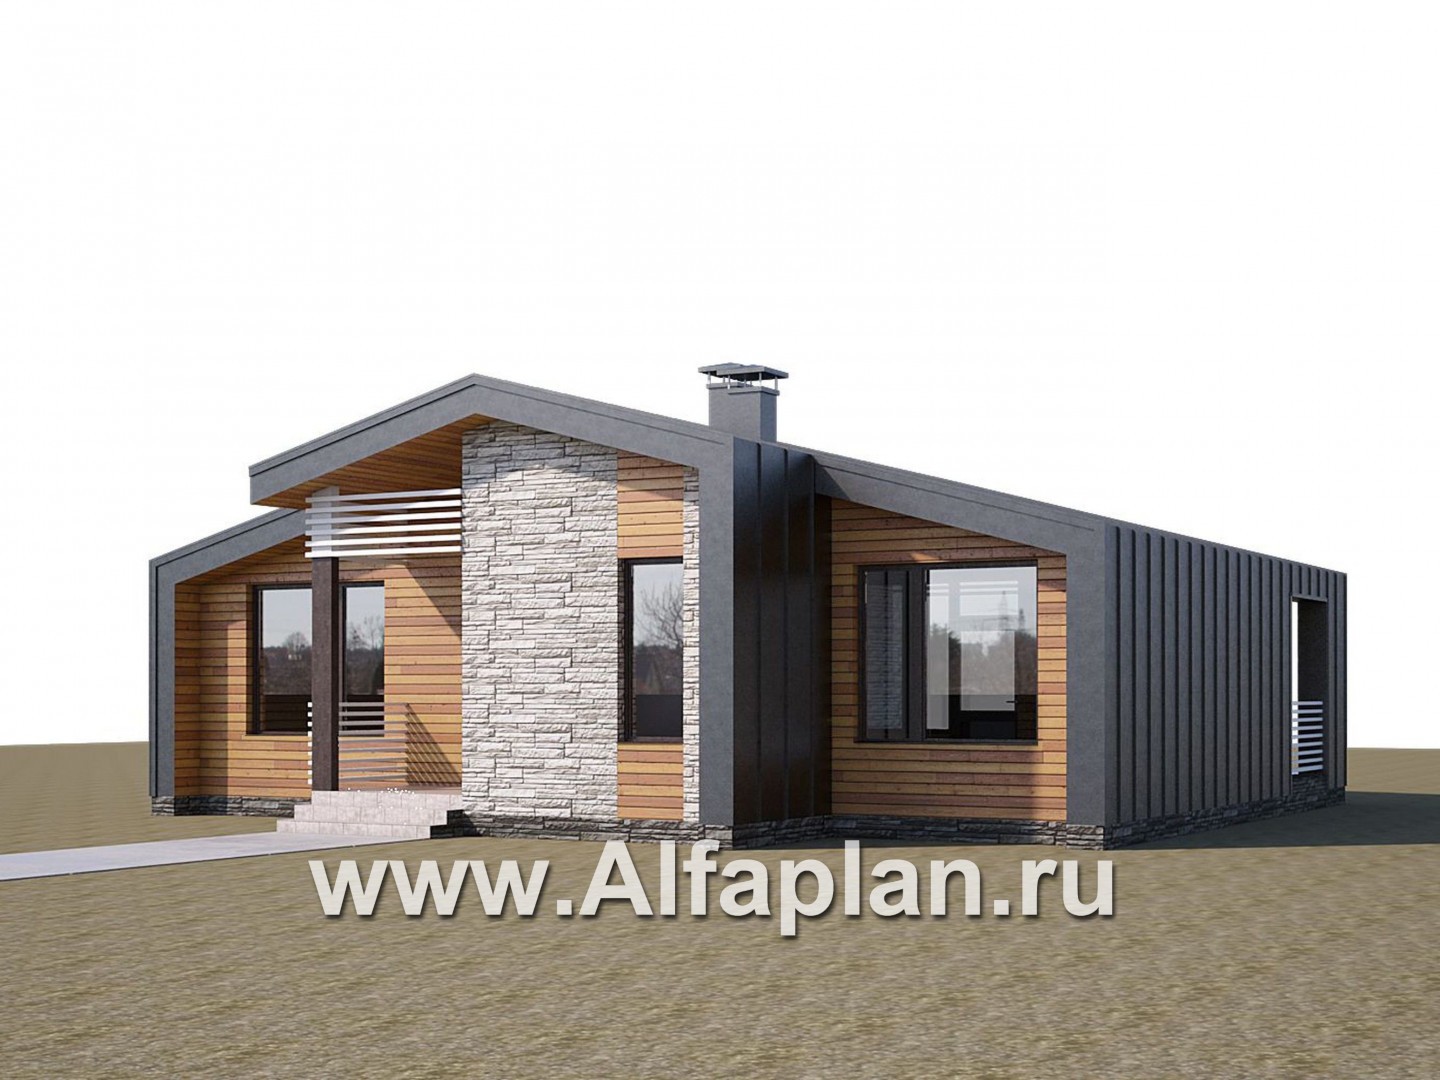 «Альфа» - проект одноэтажного каркасного дома, с сауной и с террасой, в стиле барнхаус - дизайн дома №1